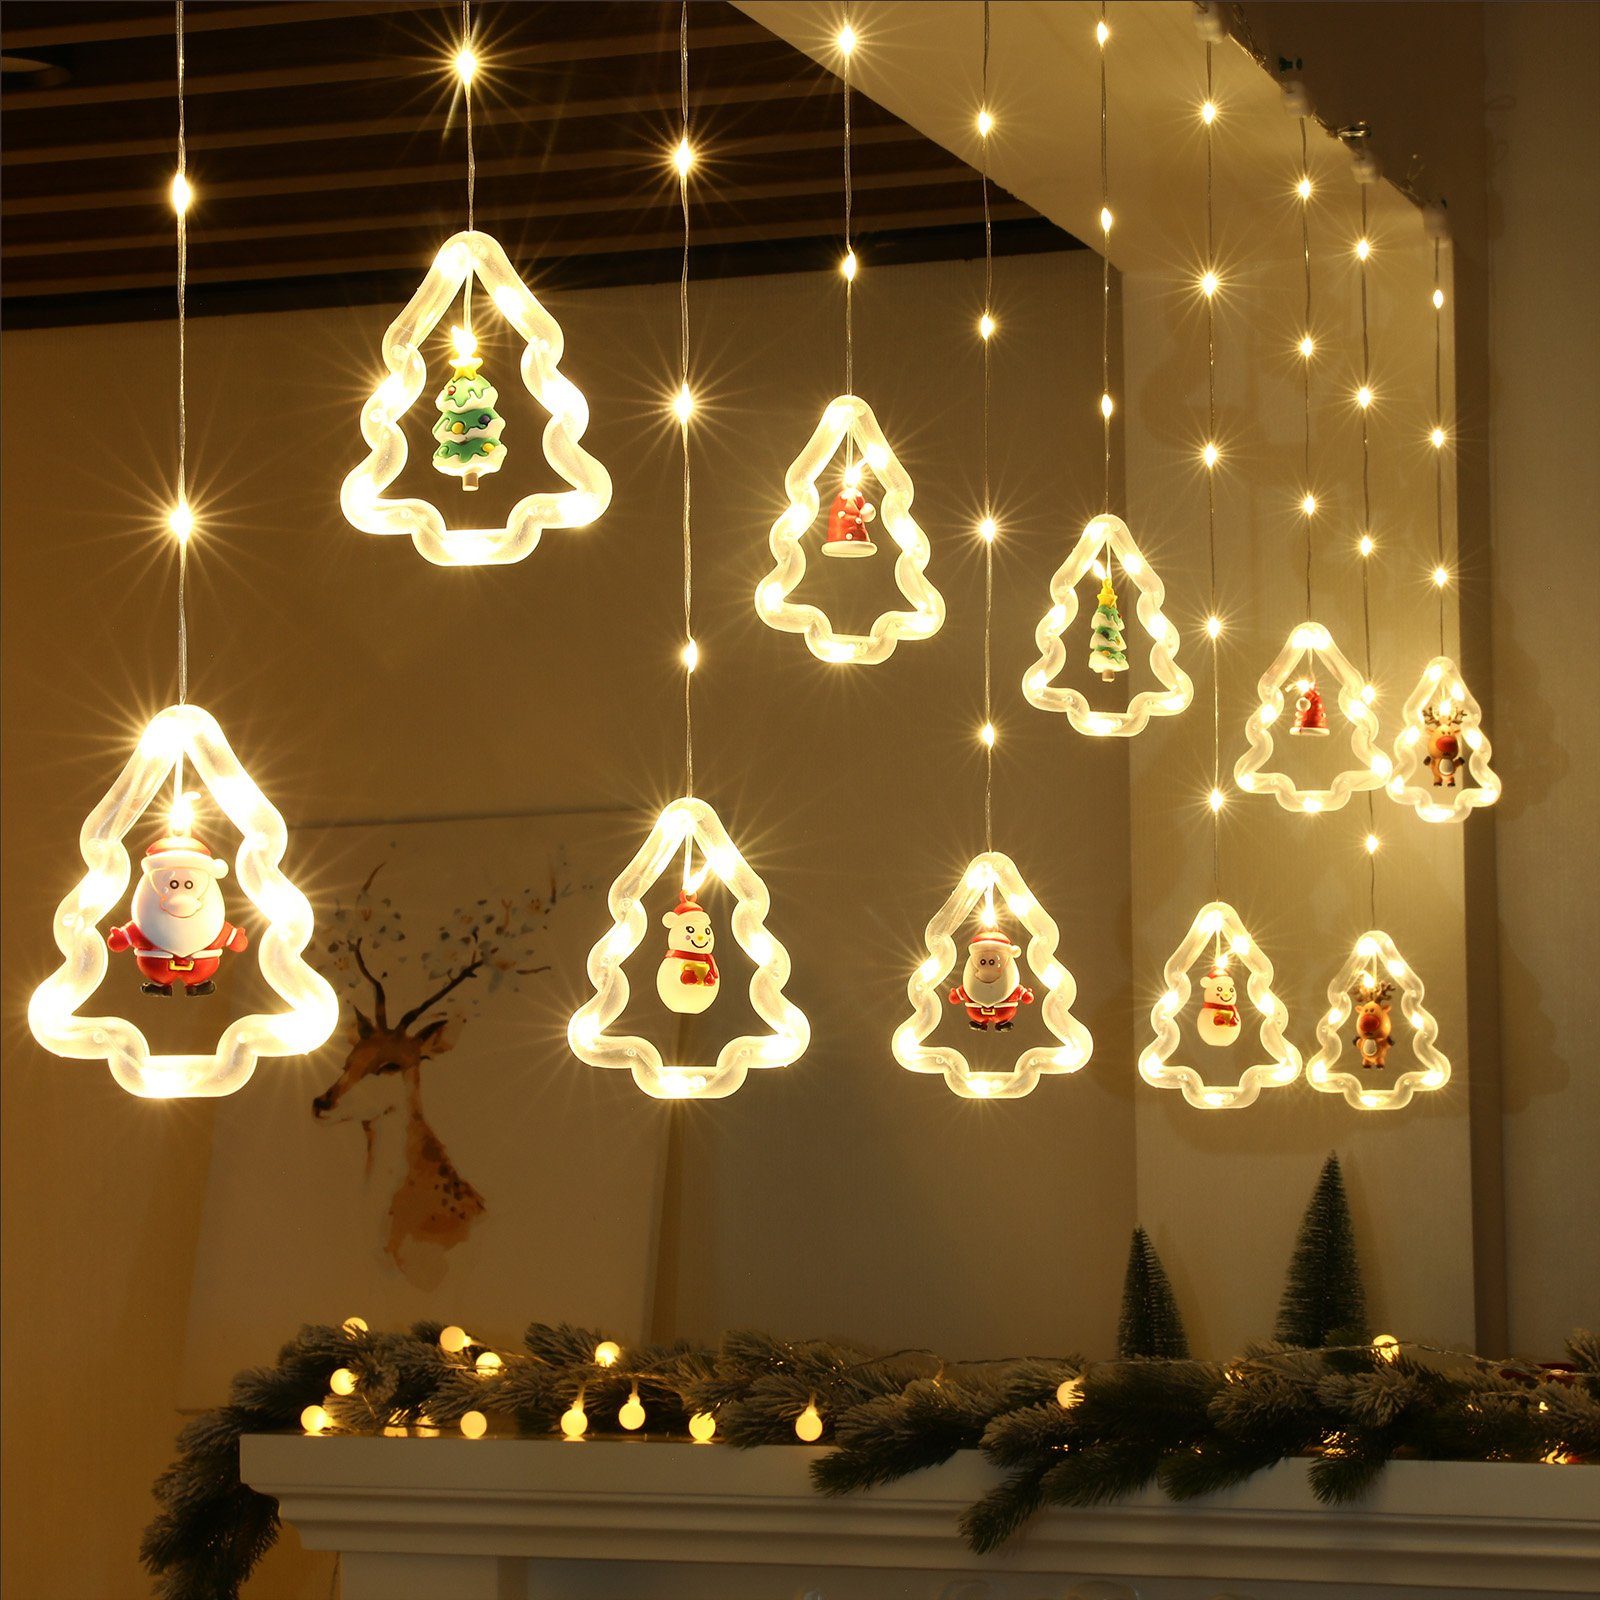 Rosnek LED-Lichtervorhang 3M, 8 Modi, USB / Batterie, für Fenster Vorhang Schlafzimmer Deko, Fernbedienung; mit hängenden Ornamenten und Haken; Weihnachten Deko